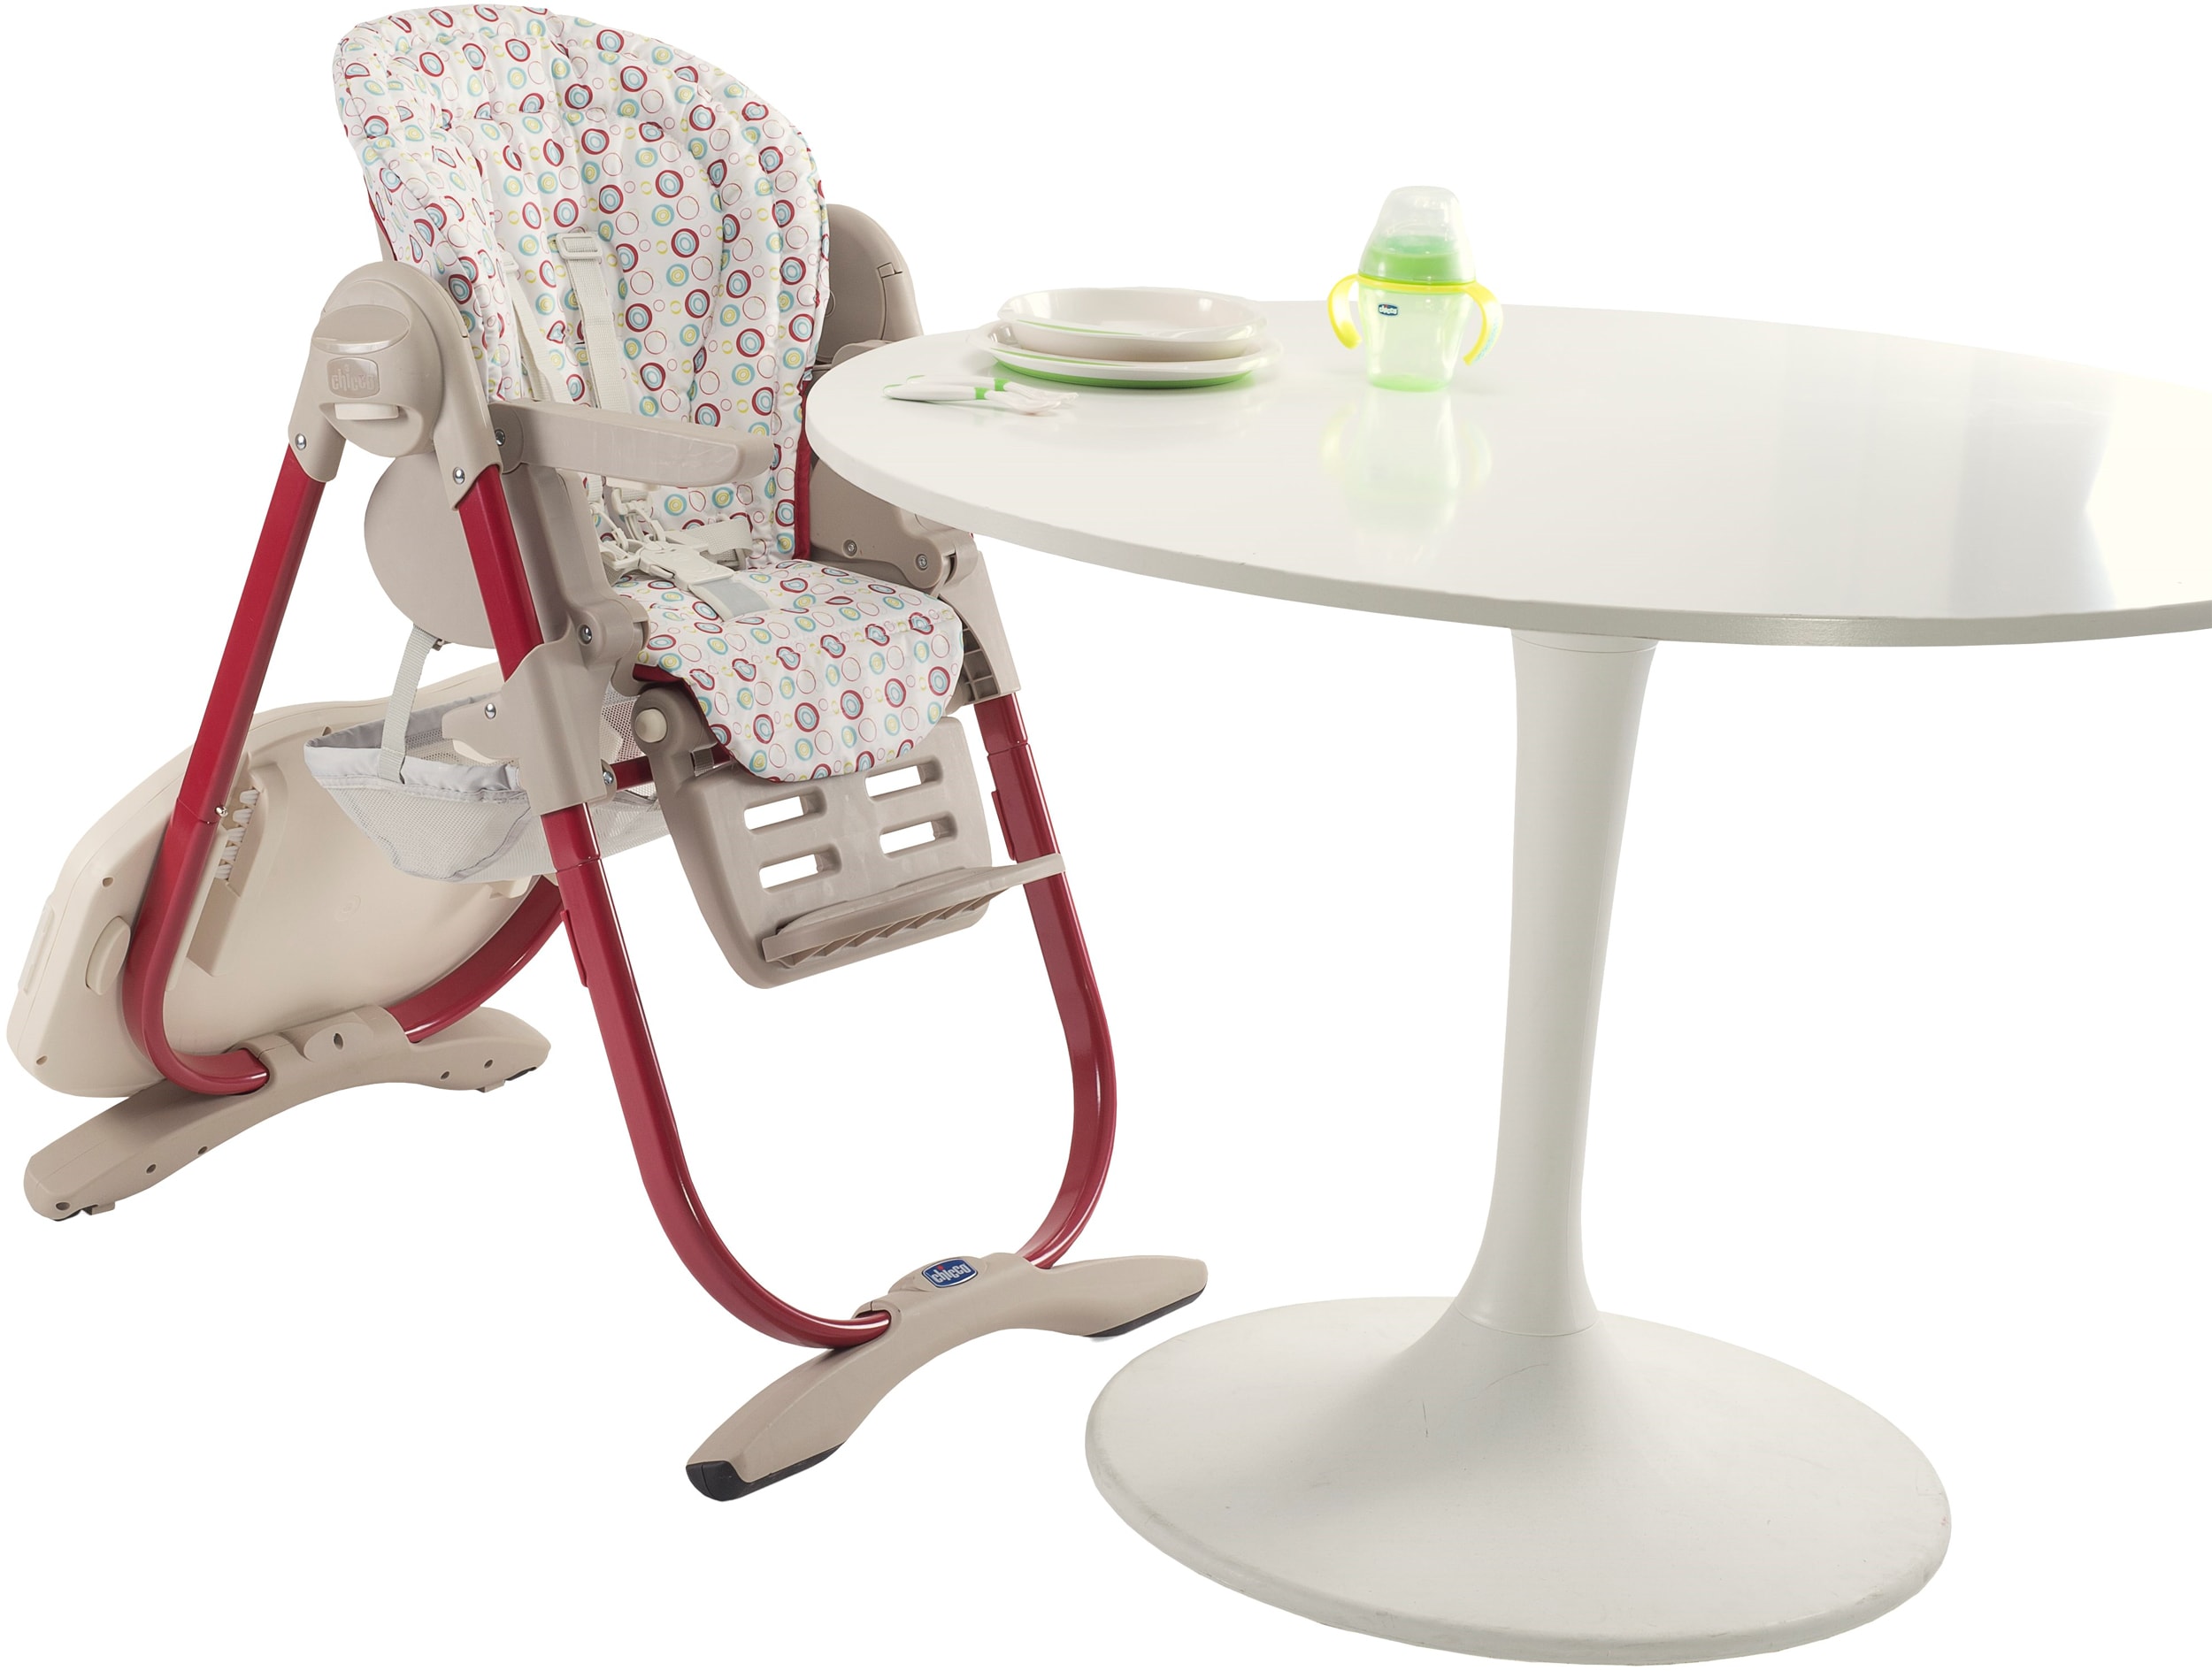 Kit barre de jeu + coussin réducteur pour chaise haute - Ma Baby